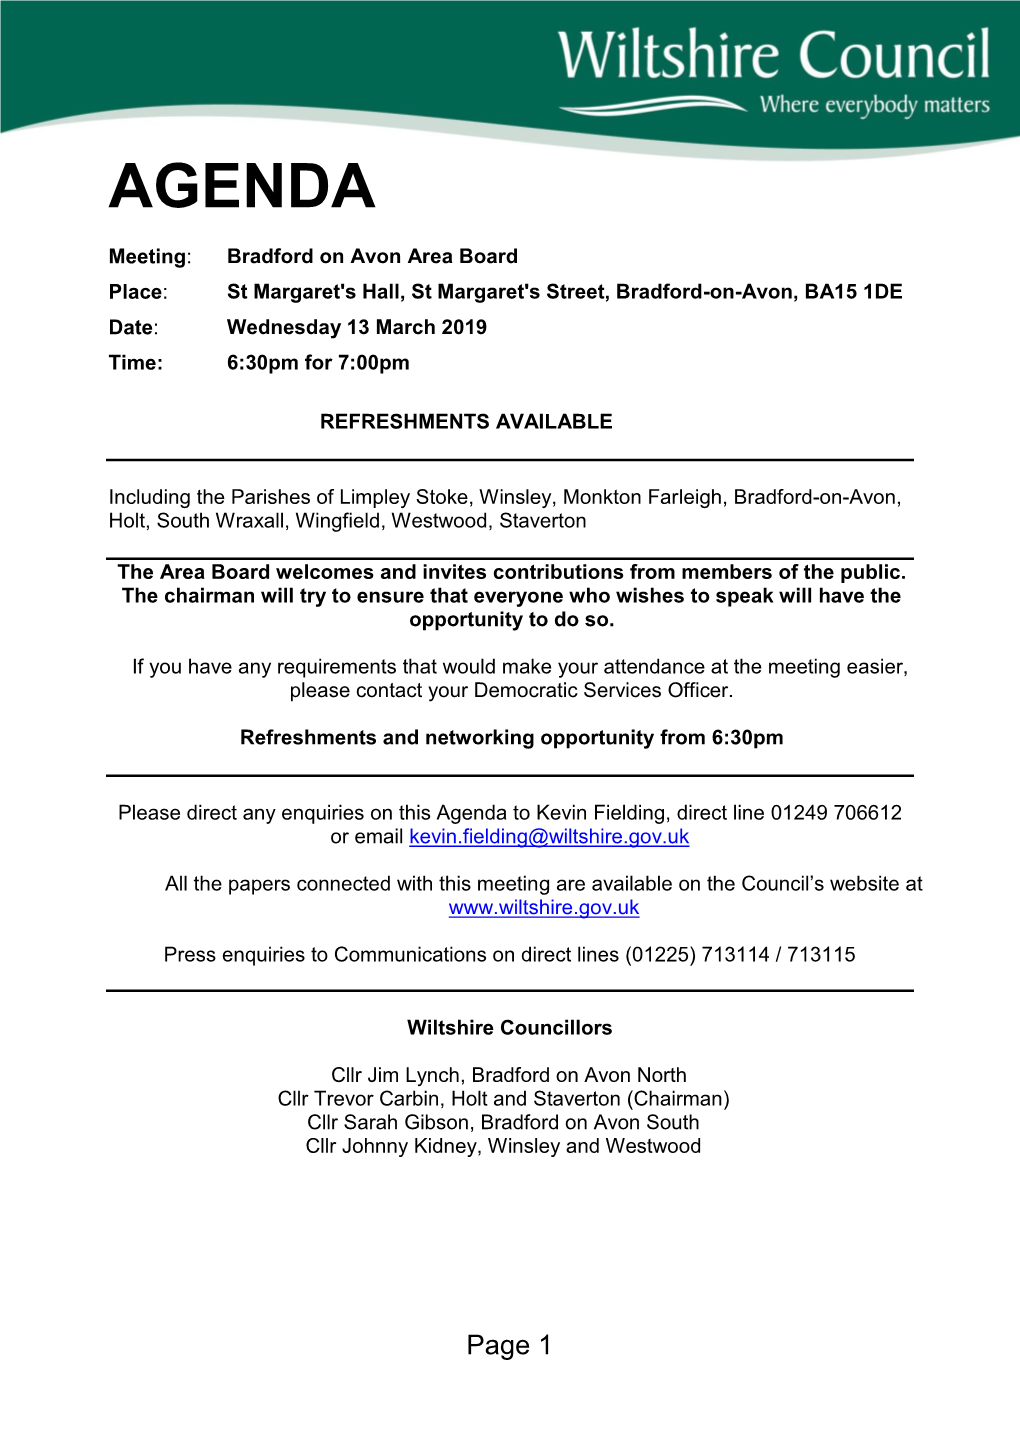 (Public Pack)Agenda Document for Bradford On